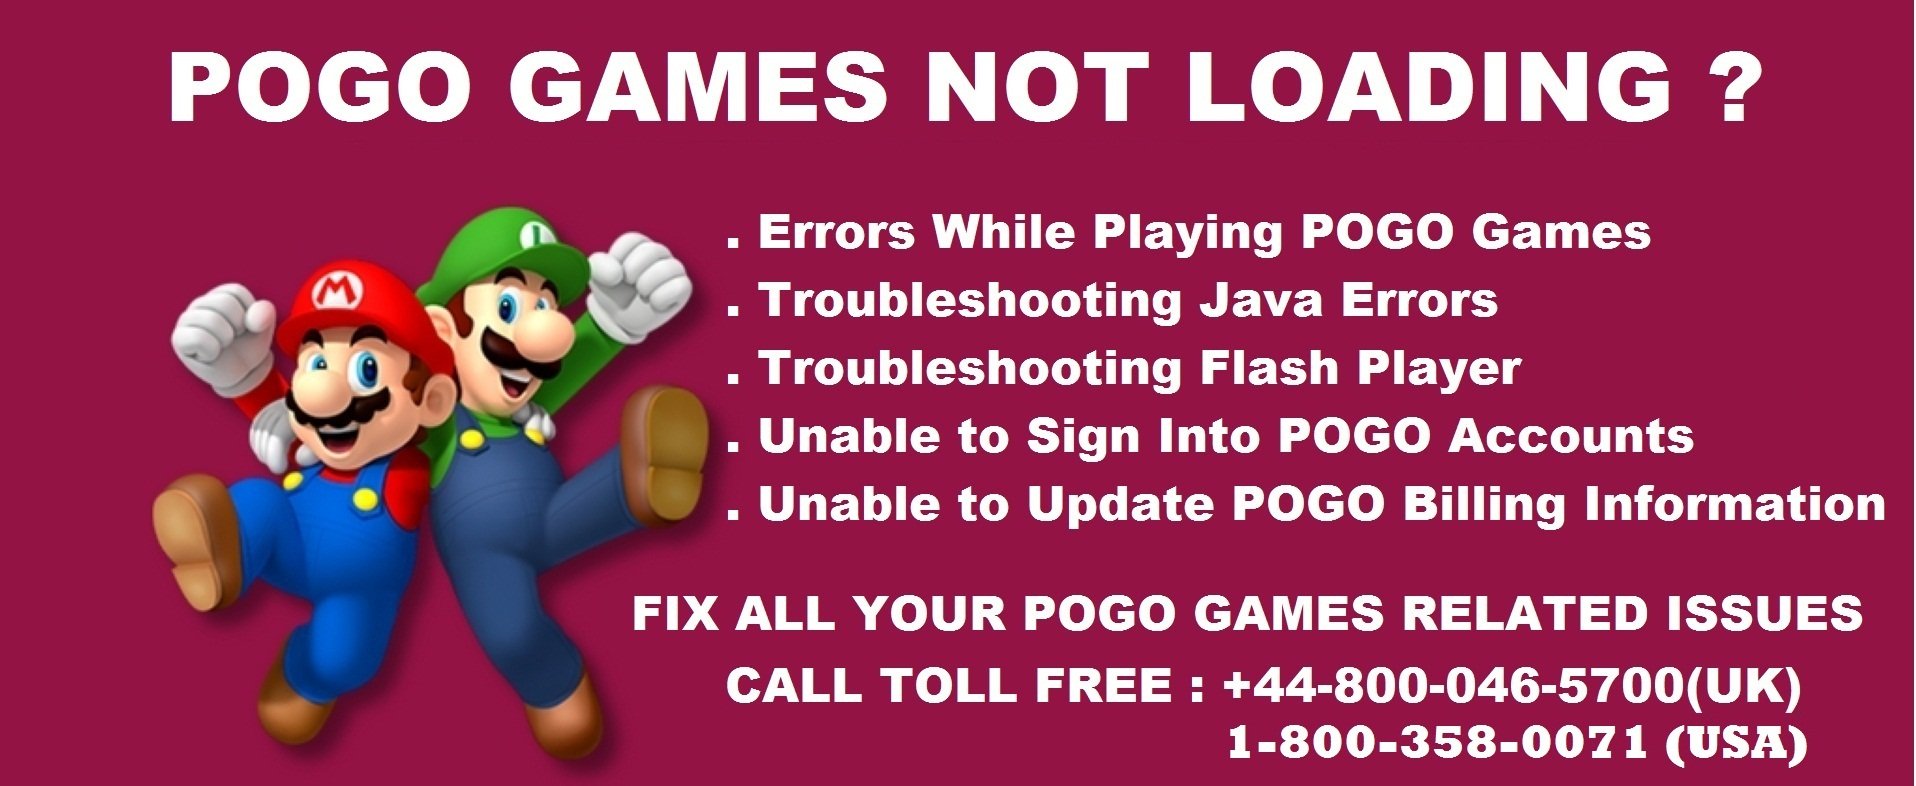 pogo games helpline number cover